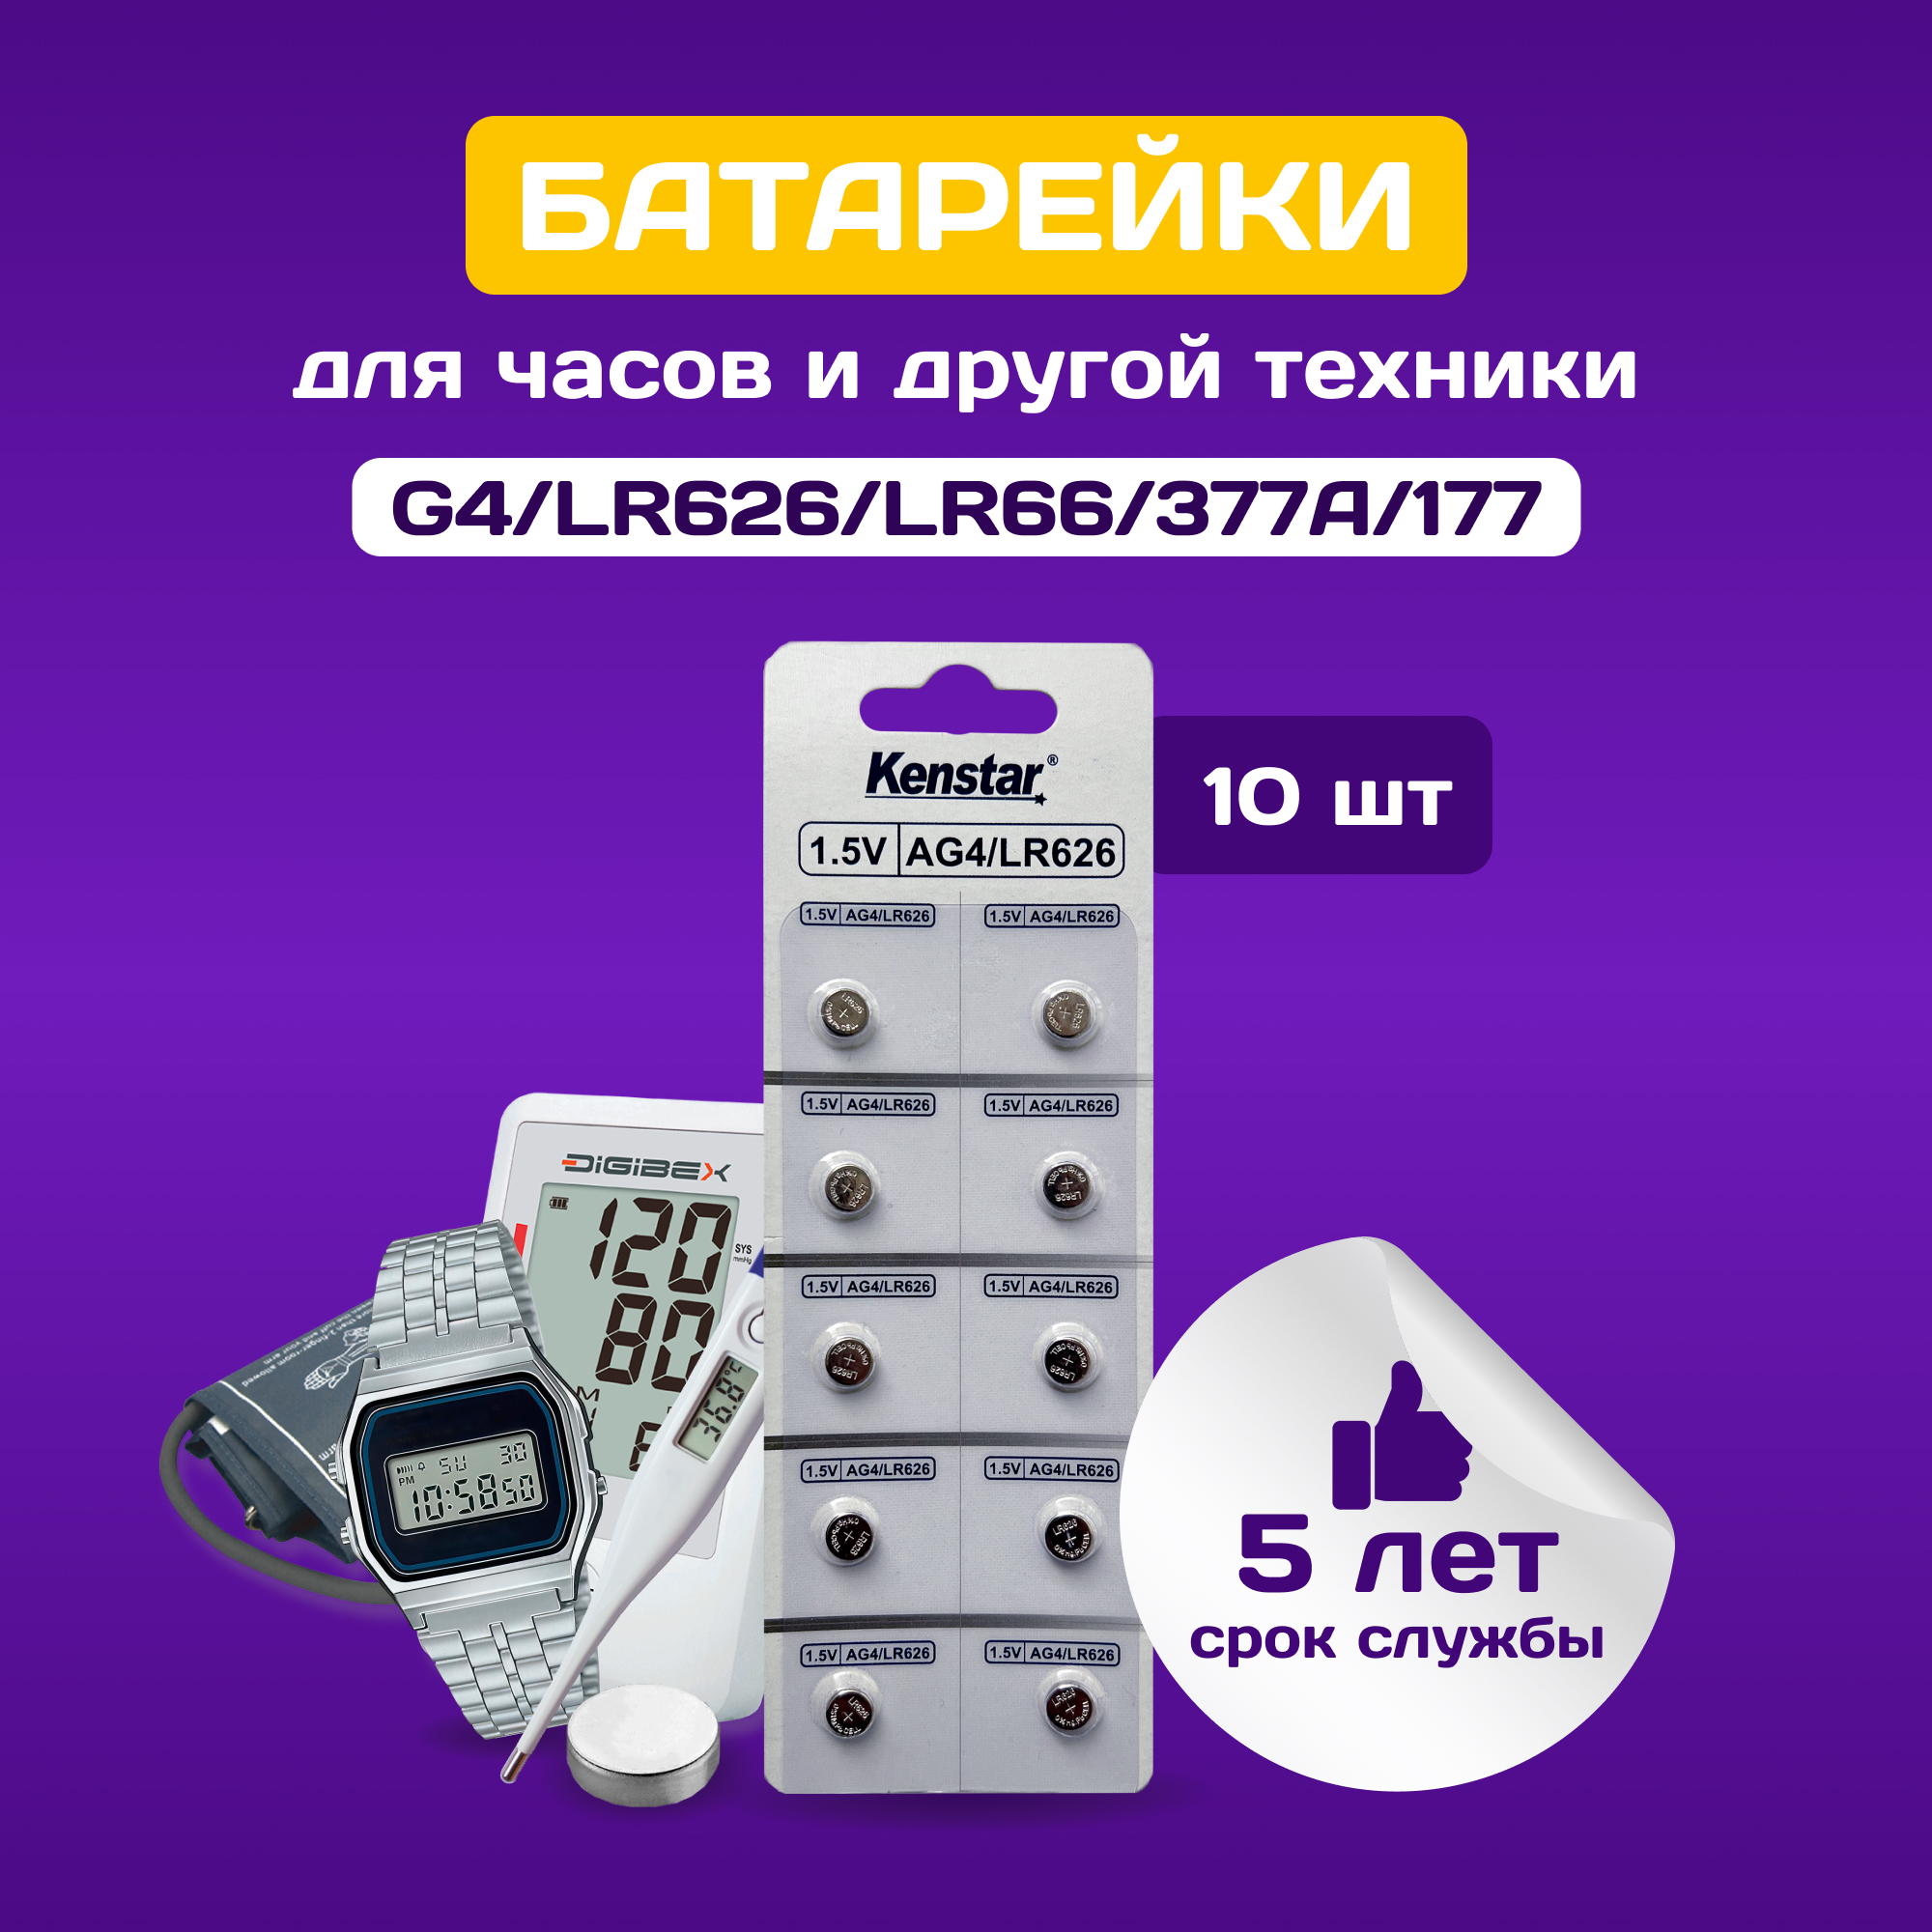 Батарейки алкалиновые (щелочные) часовые KenStar G4/LR626/LR66/377A/177 1.5V, 10 шт. набор игрушек для животных